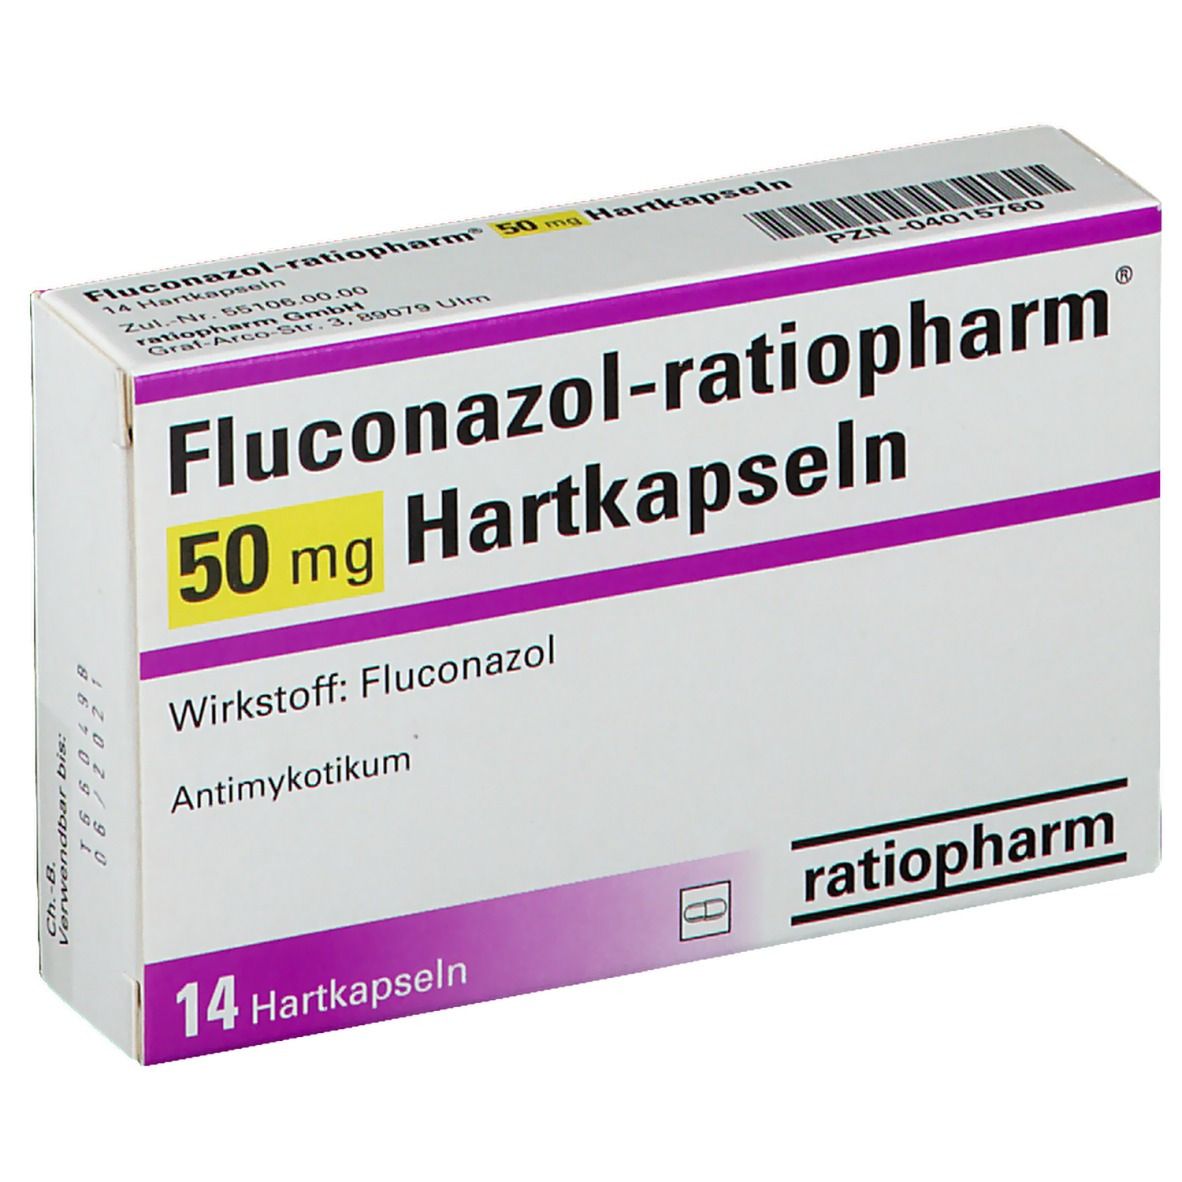 Fluconazol-ratiopharm® 50 mg